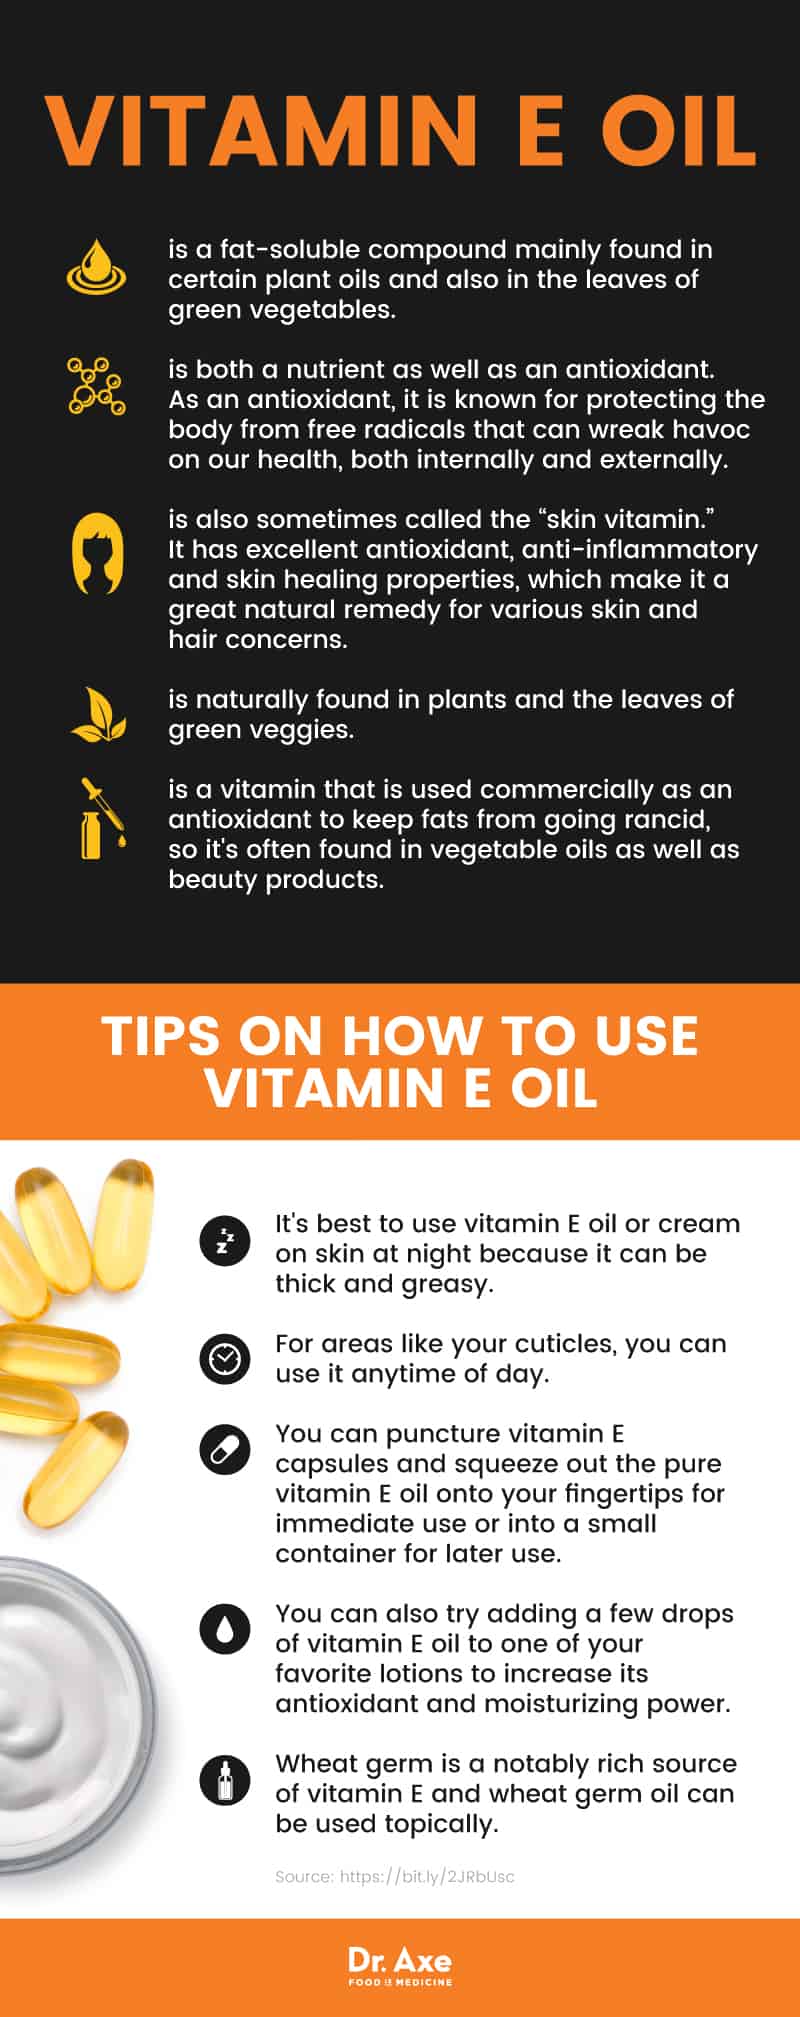 About vitamin E oil - Dr. Axe